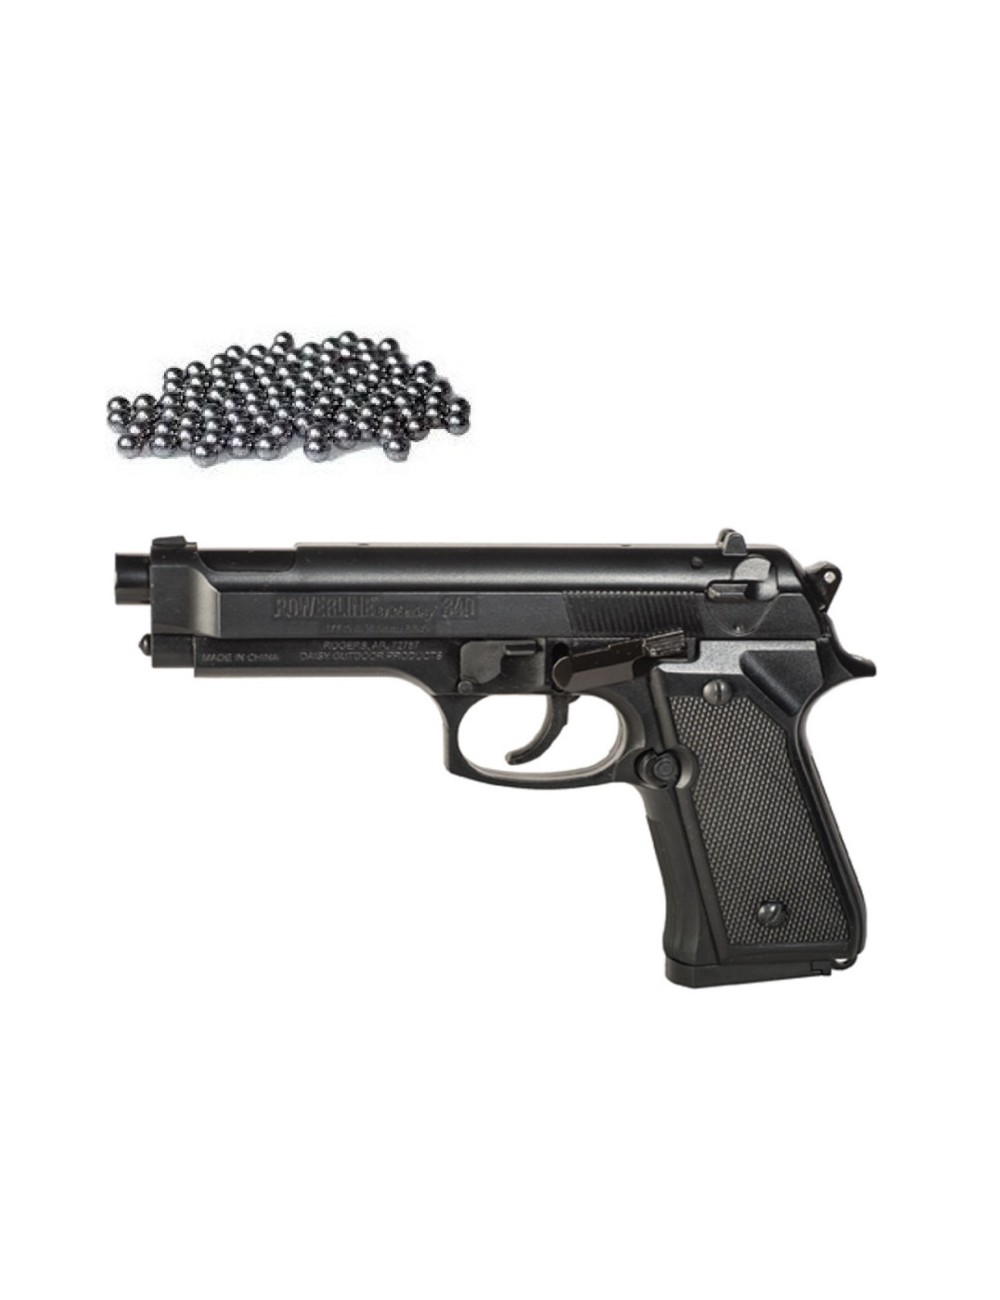 ▷ Balines y perdigones calibre 5.5mm - Munición para carabinas